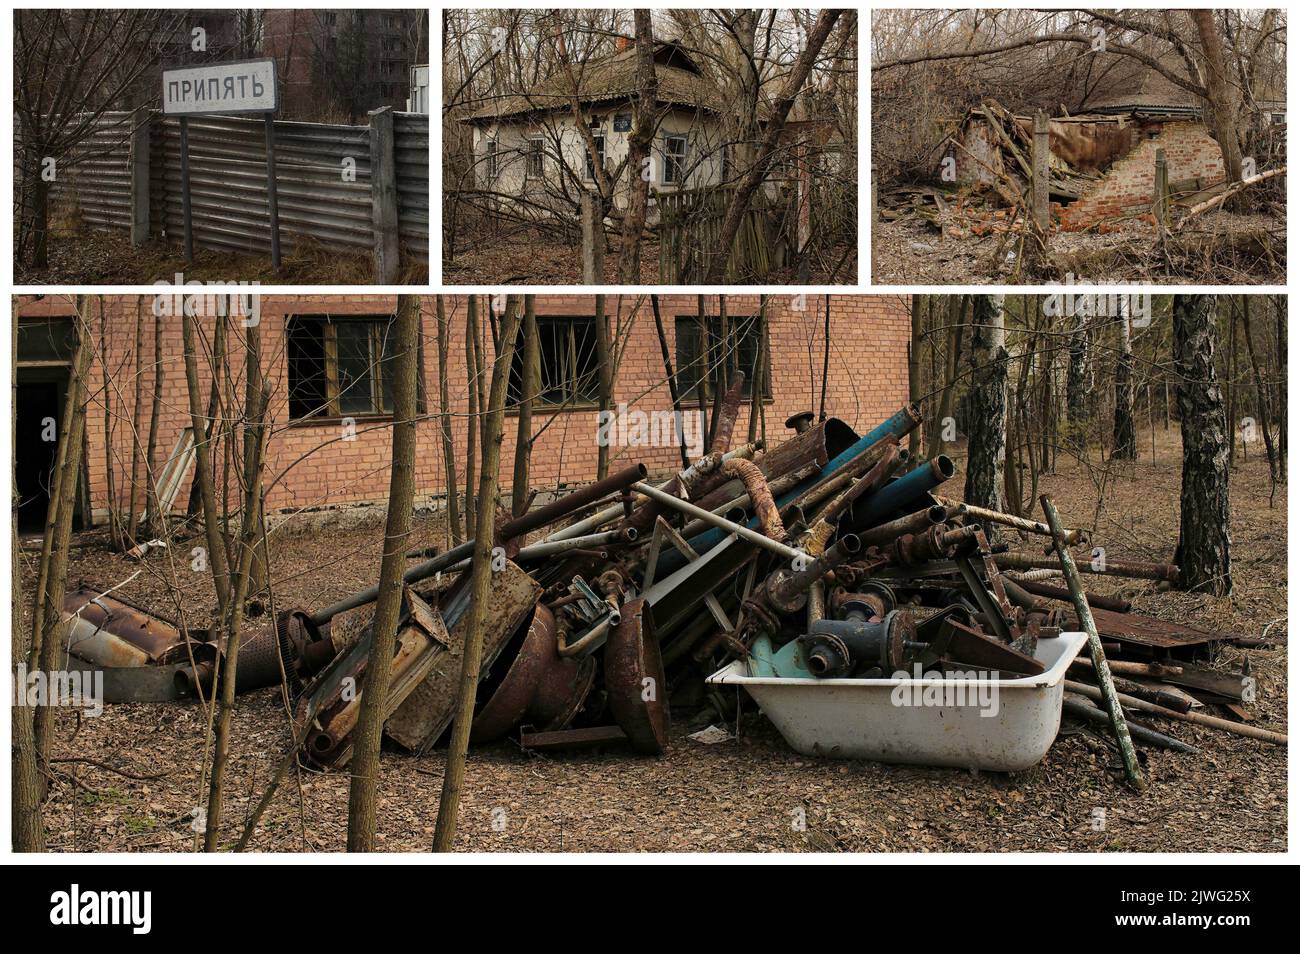 La città spettrale di Pripyat (Ukrain) famosa per il disastro di Chernobyl, nella sua zona di esclusione, ancora radioattiva e pericolosa. (2) Foto Stock